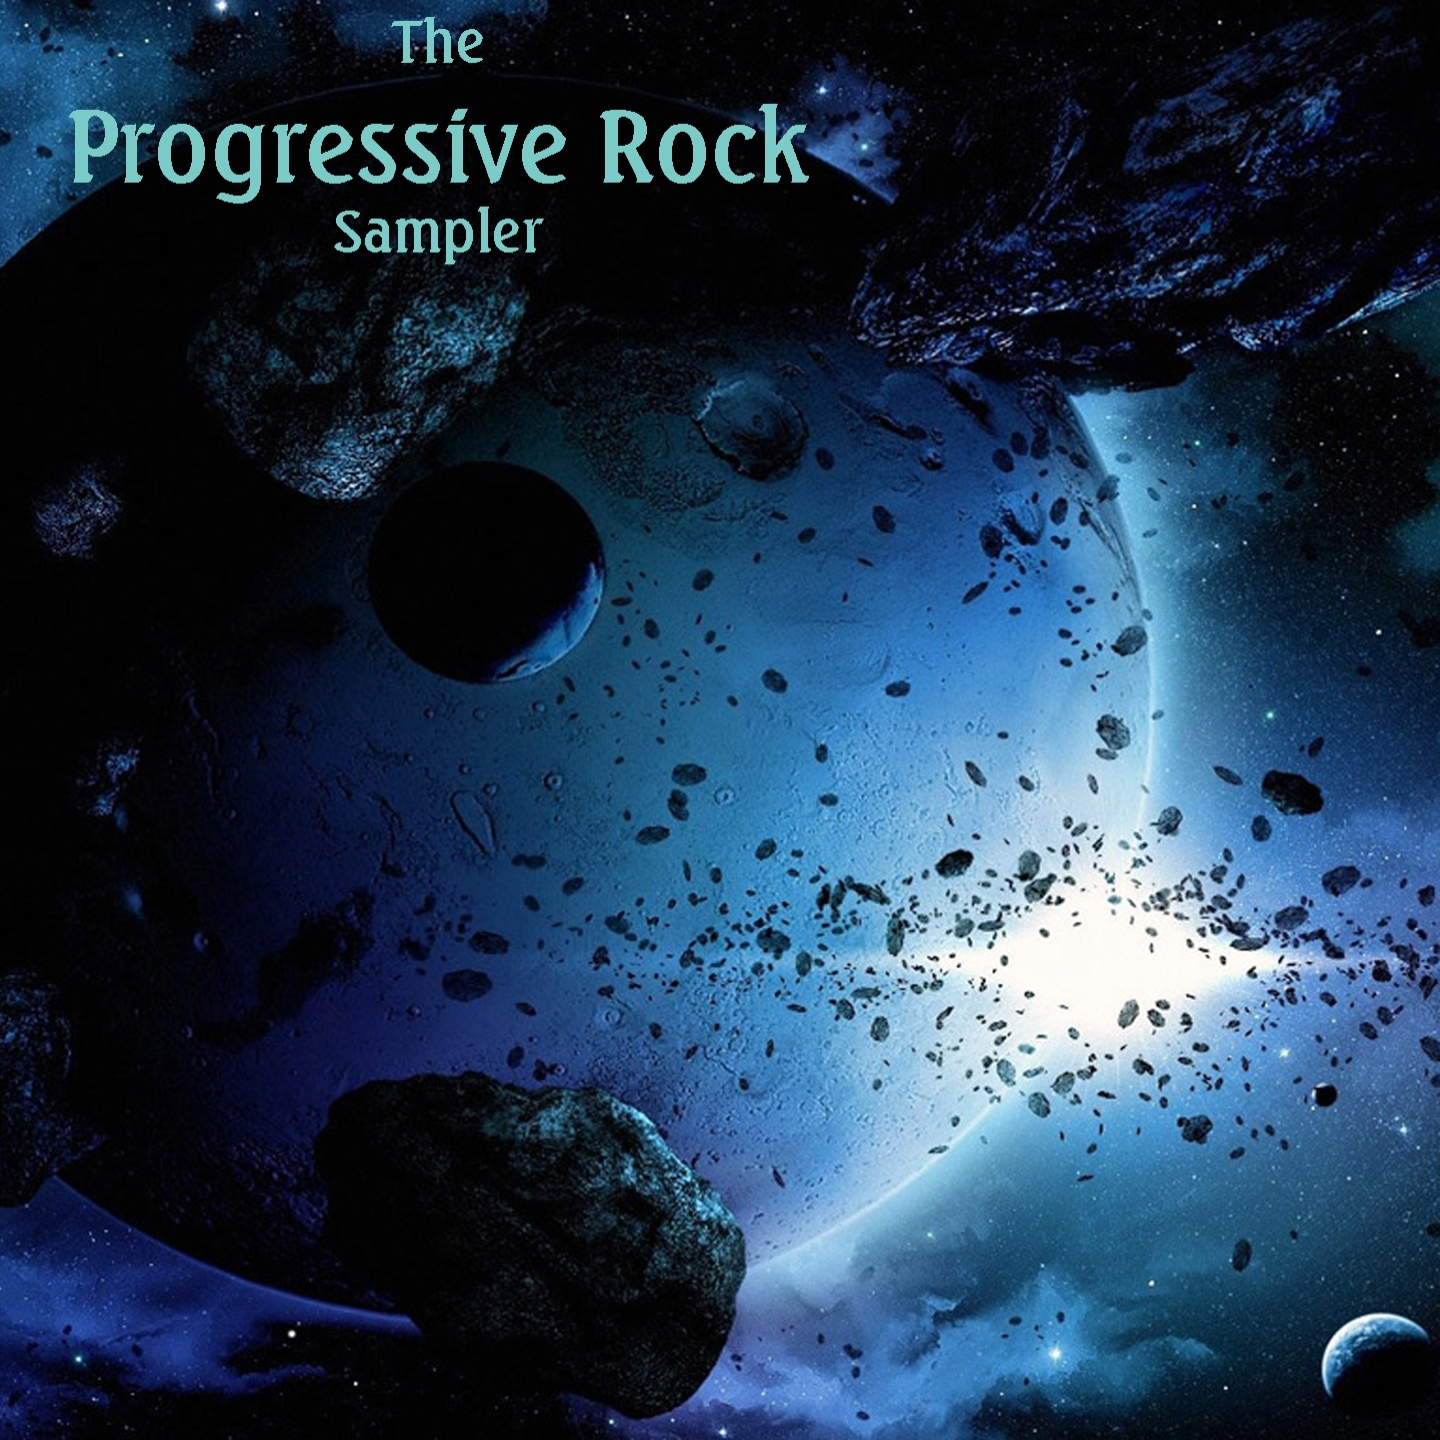 The Progressive Rock Sampler